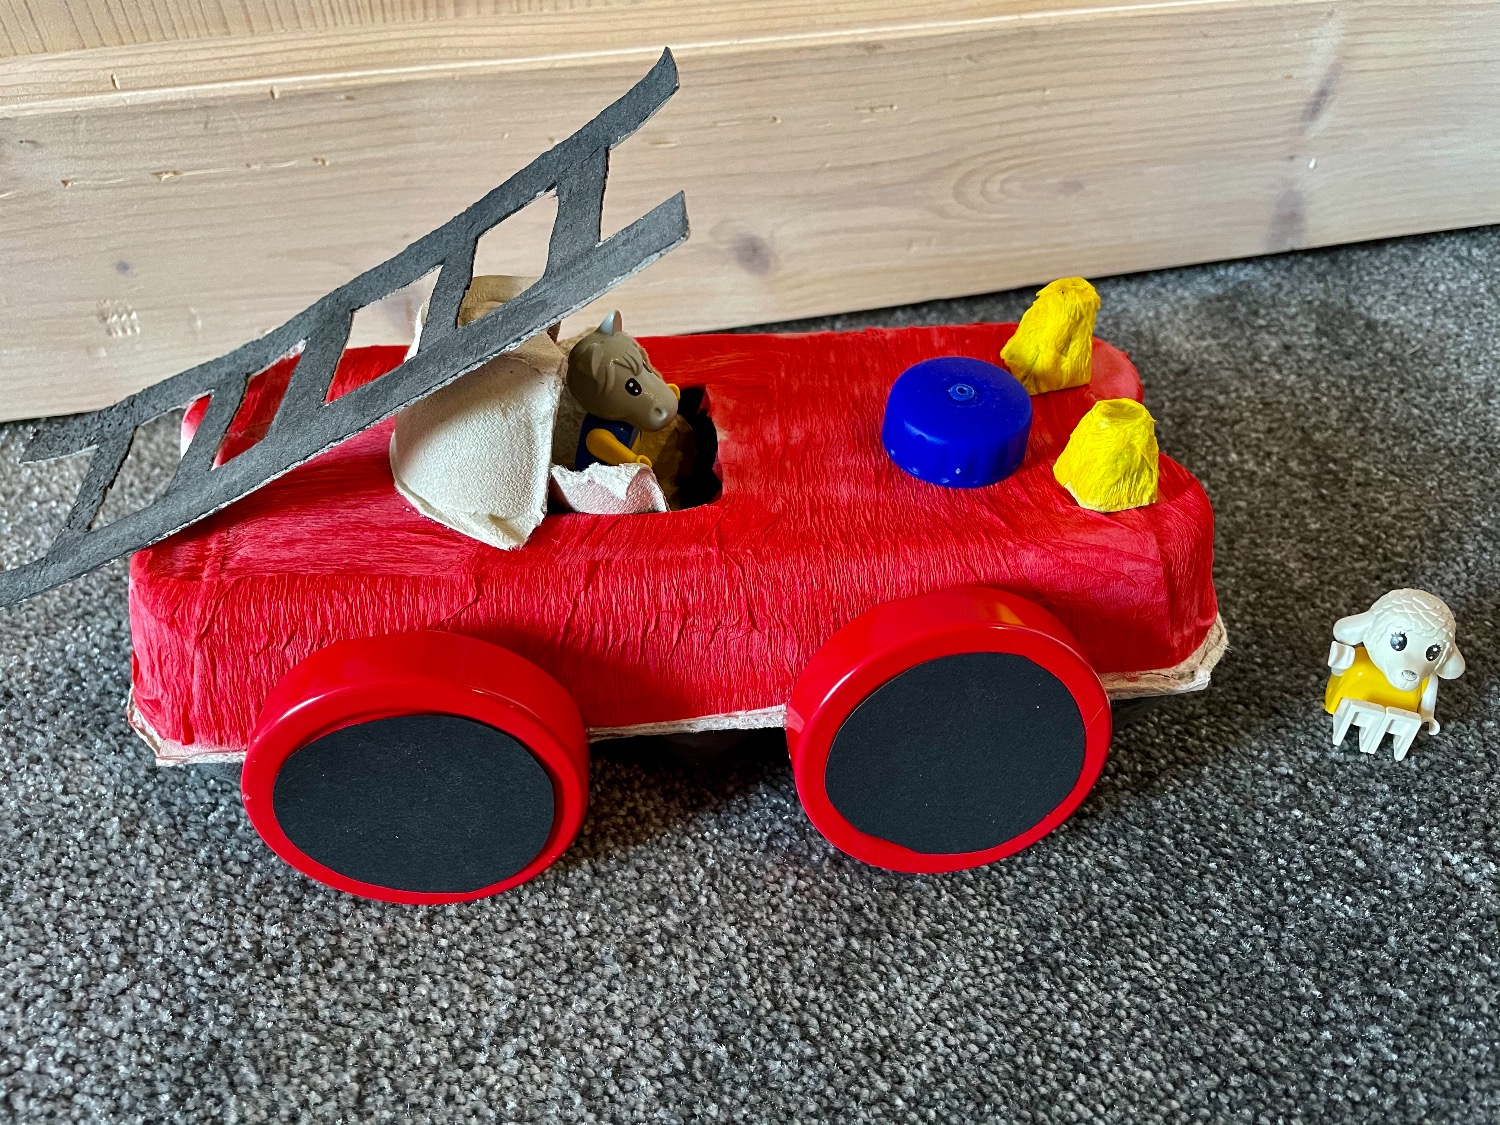 Titelbild zur Idee für die Beschäftigung mit Kindern 'Feuerwehrauto aus Eierkarton'